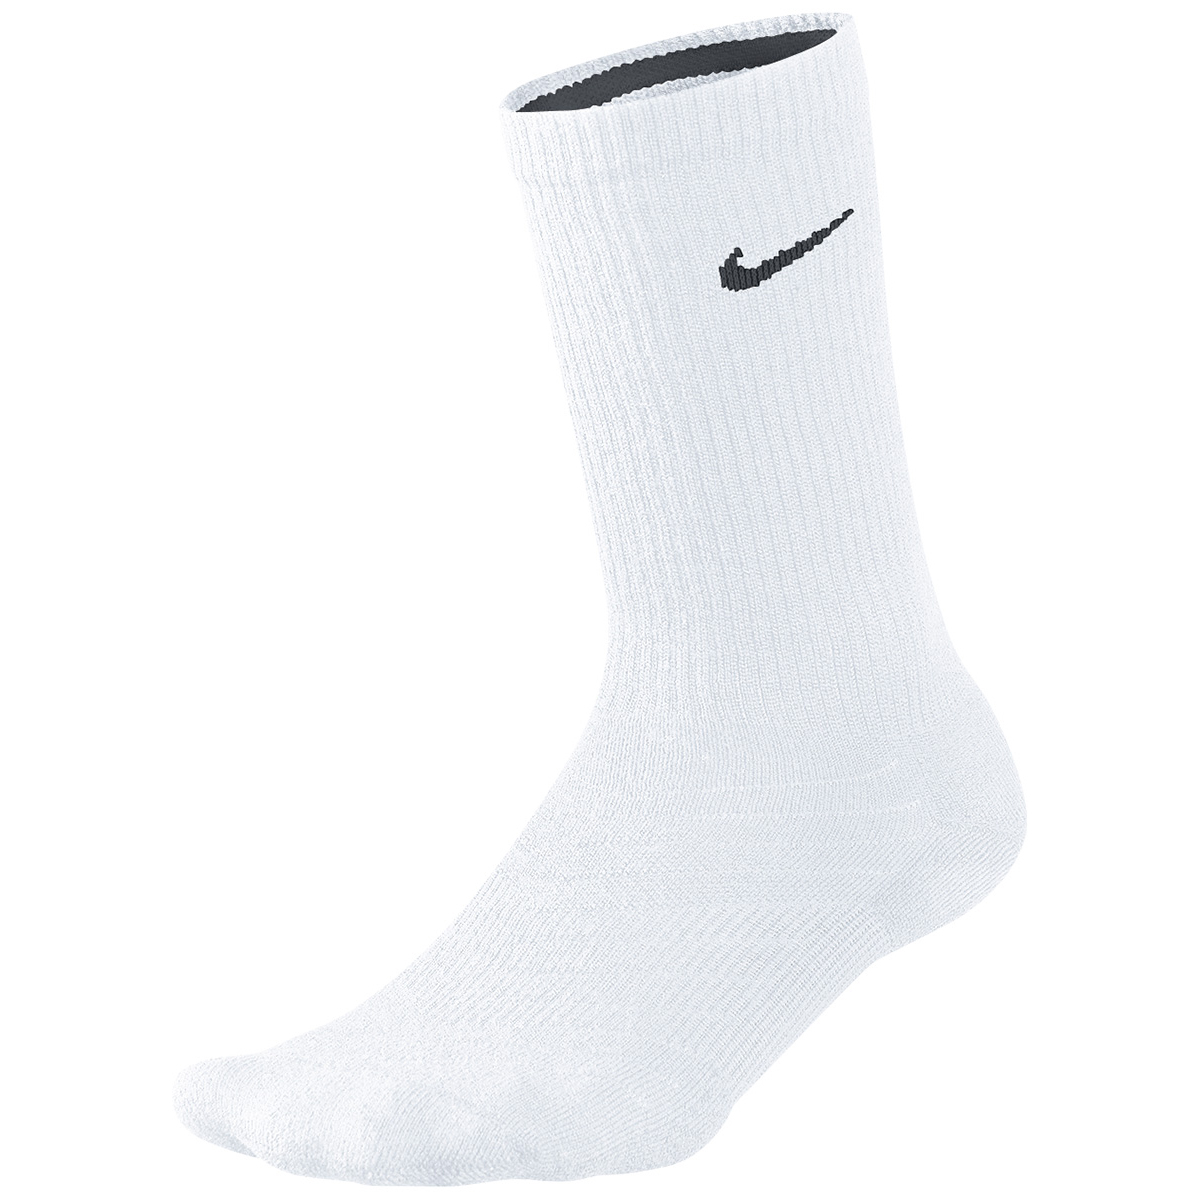 Nike Golf Dri-FIT Crew 3 Pack Socks | Online Golf